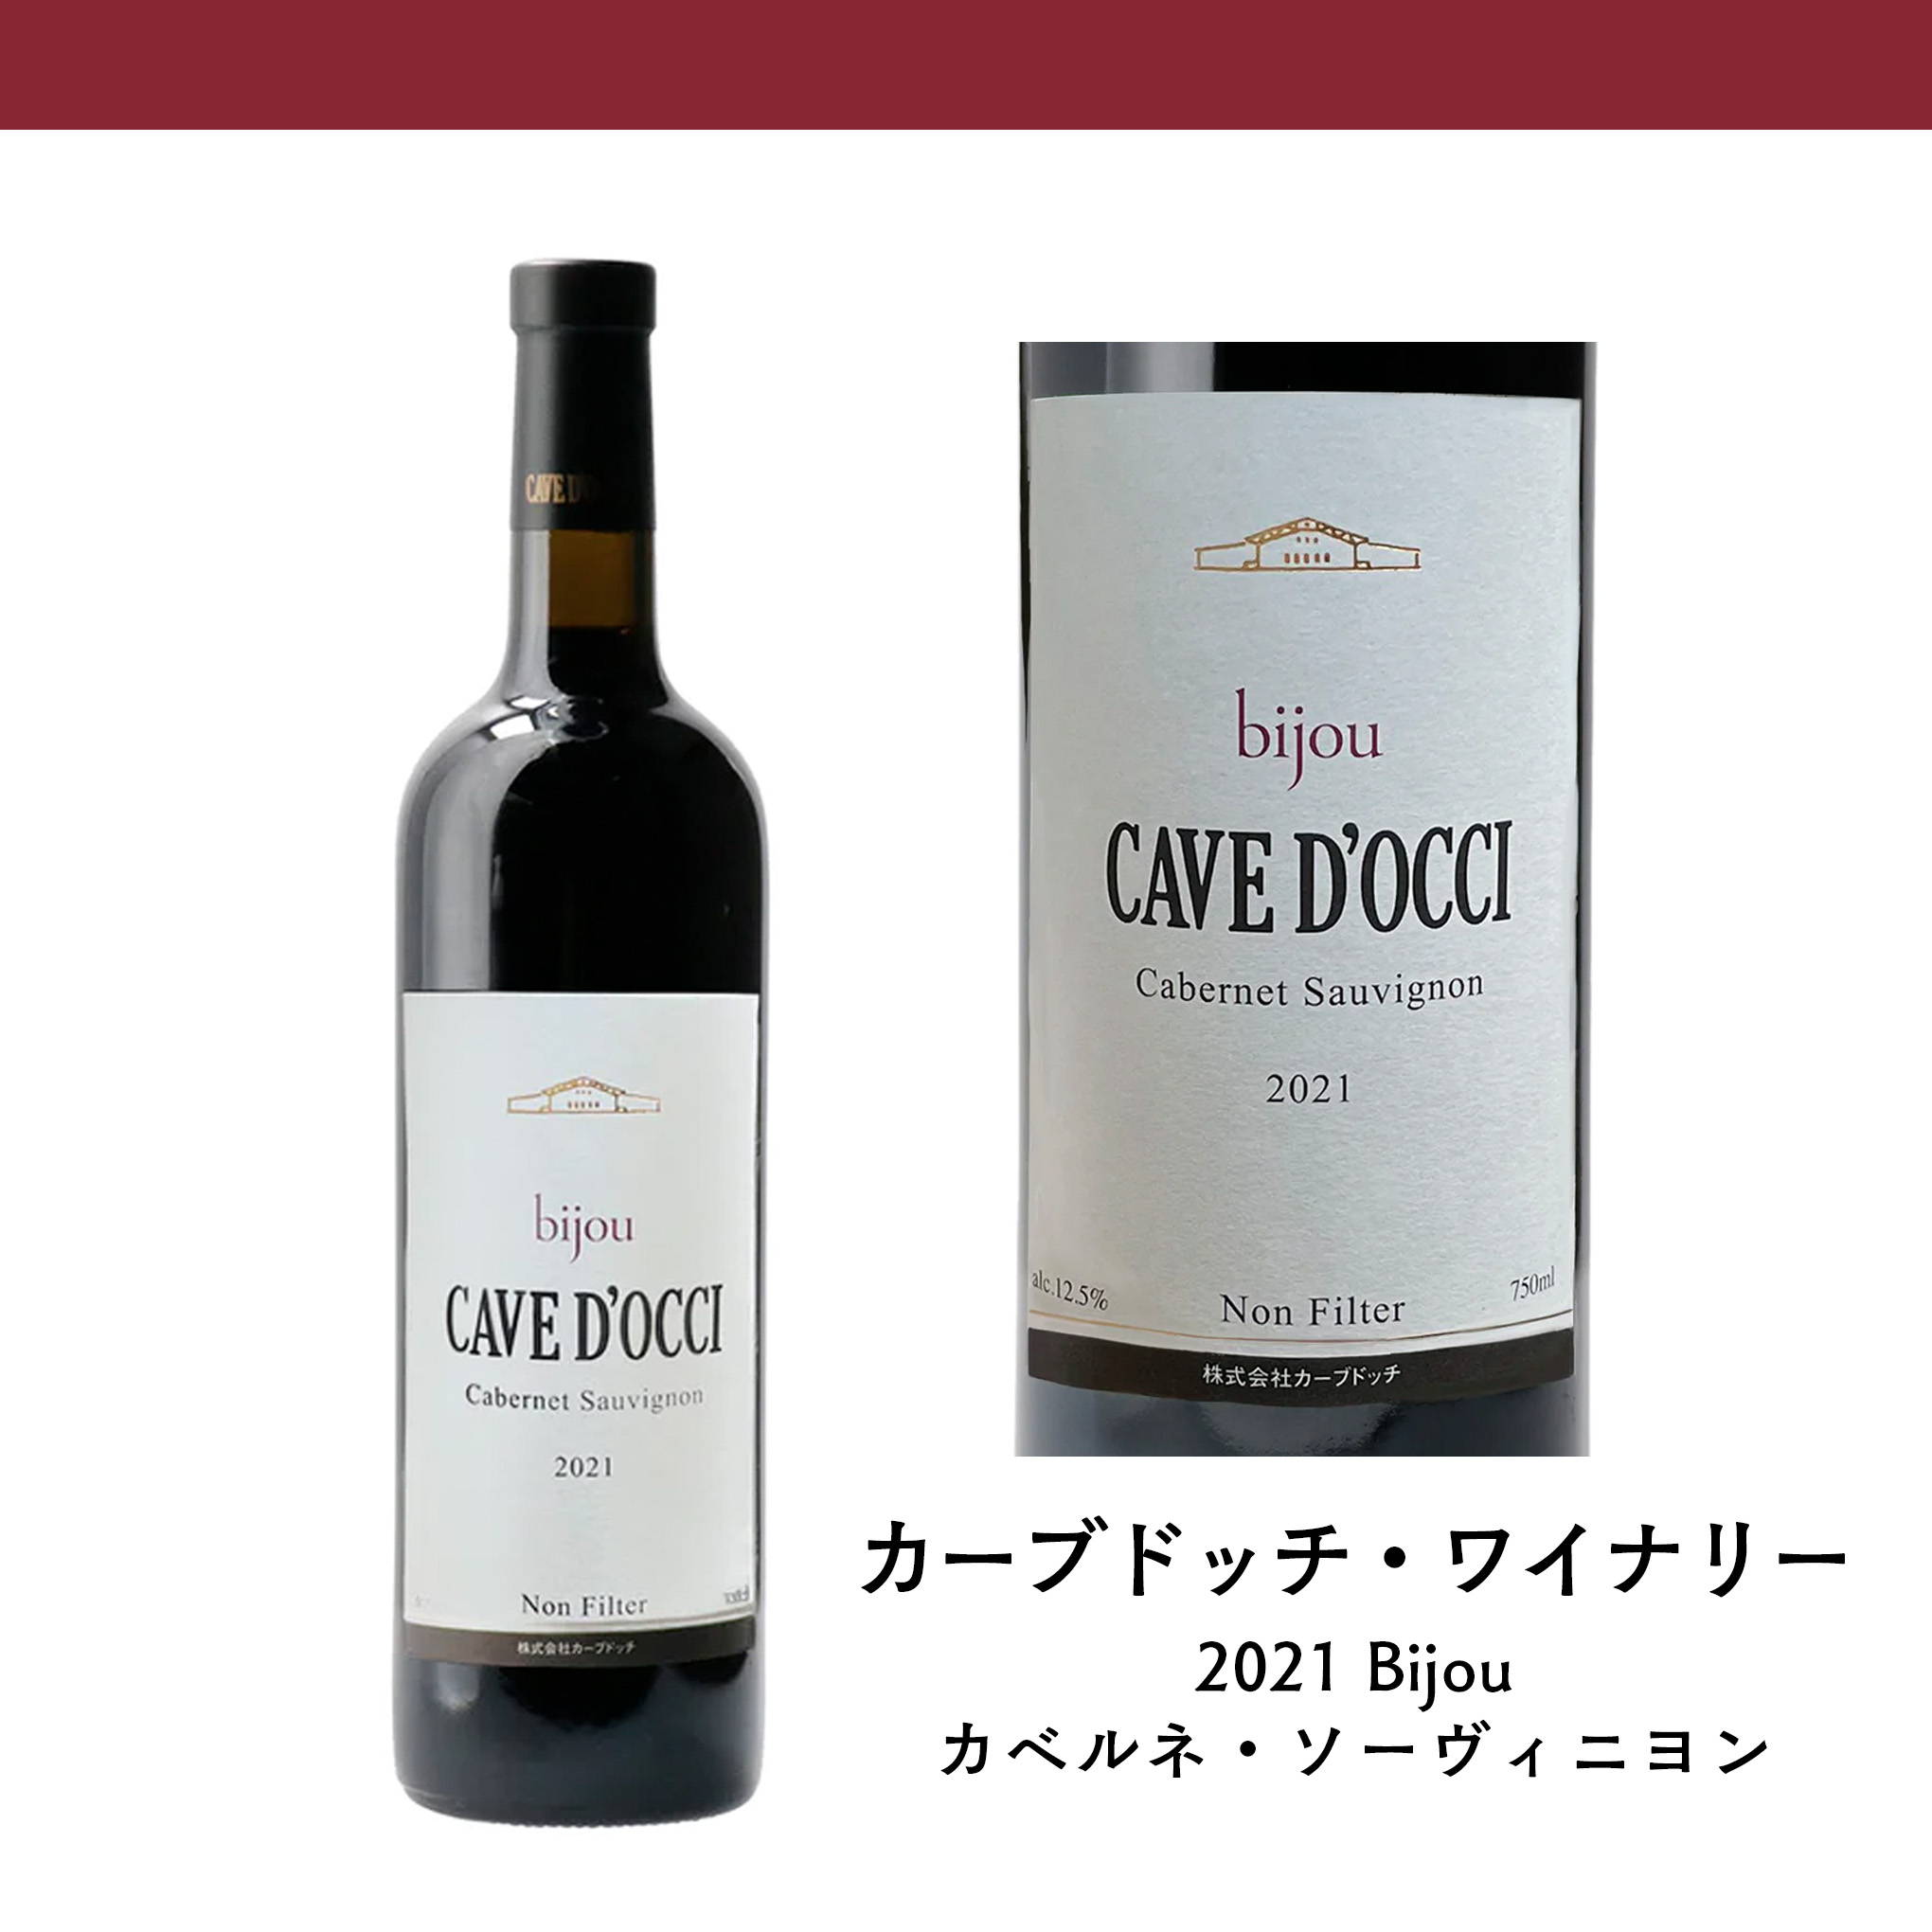 天候に恵まれた2021年の「カベルネ・ソーヴィニヨン」を使用した、『カーブドッチ・ワイナリー』の赤ワイン。